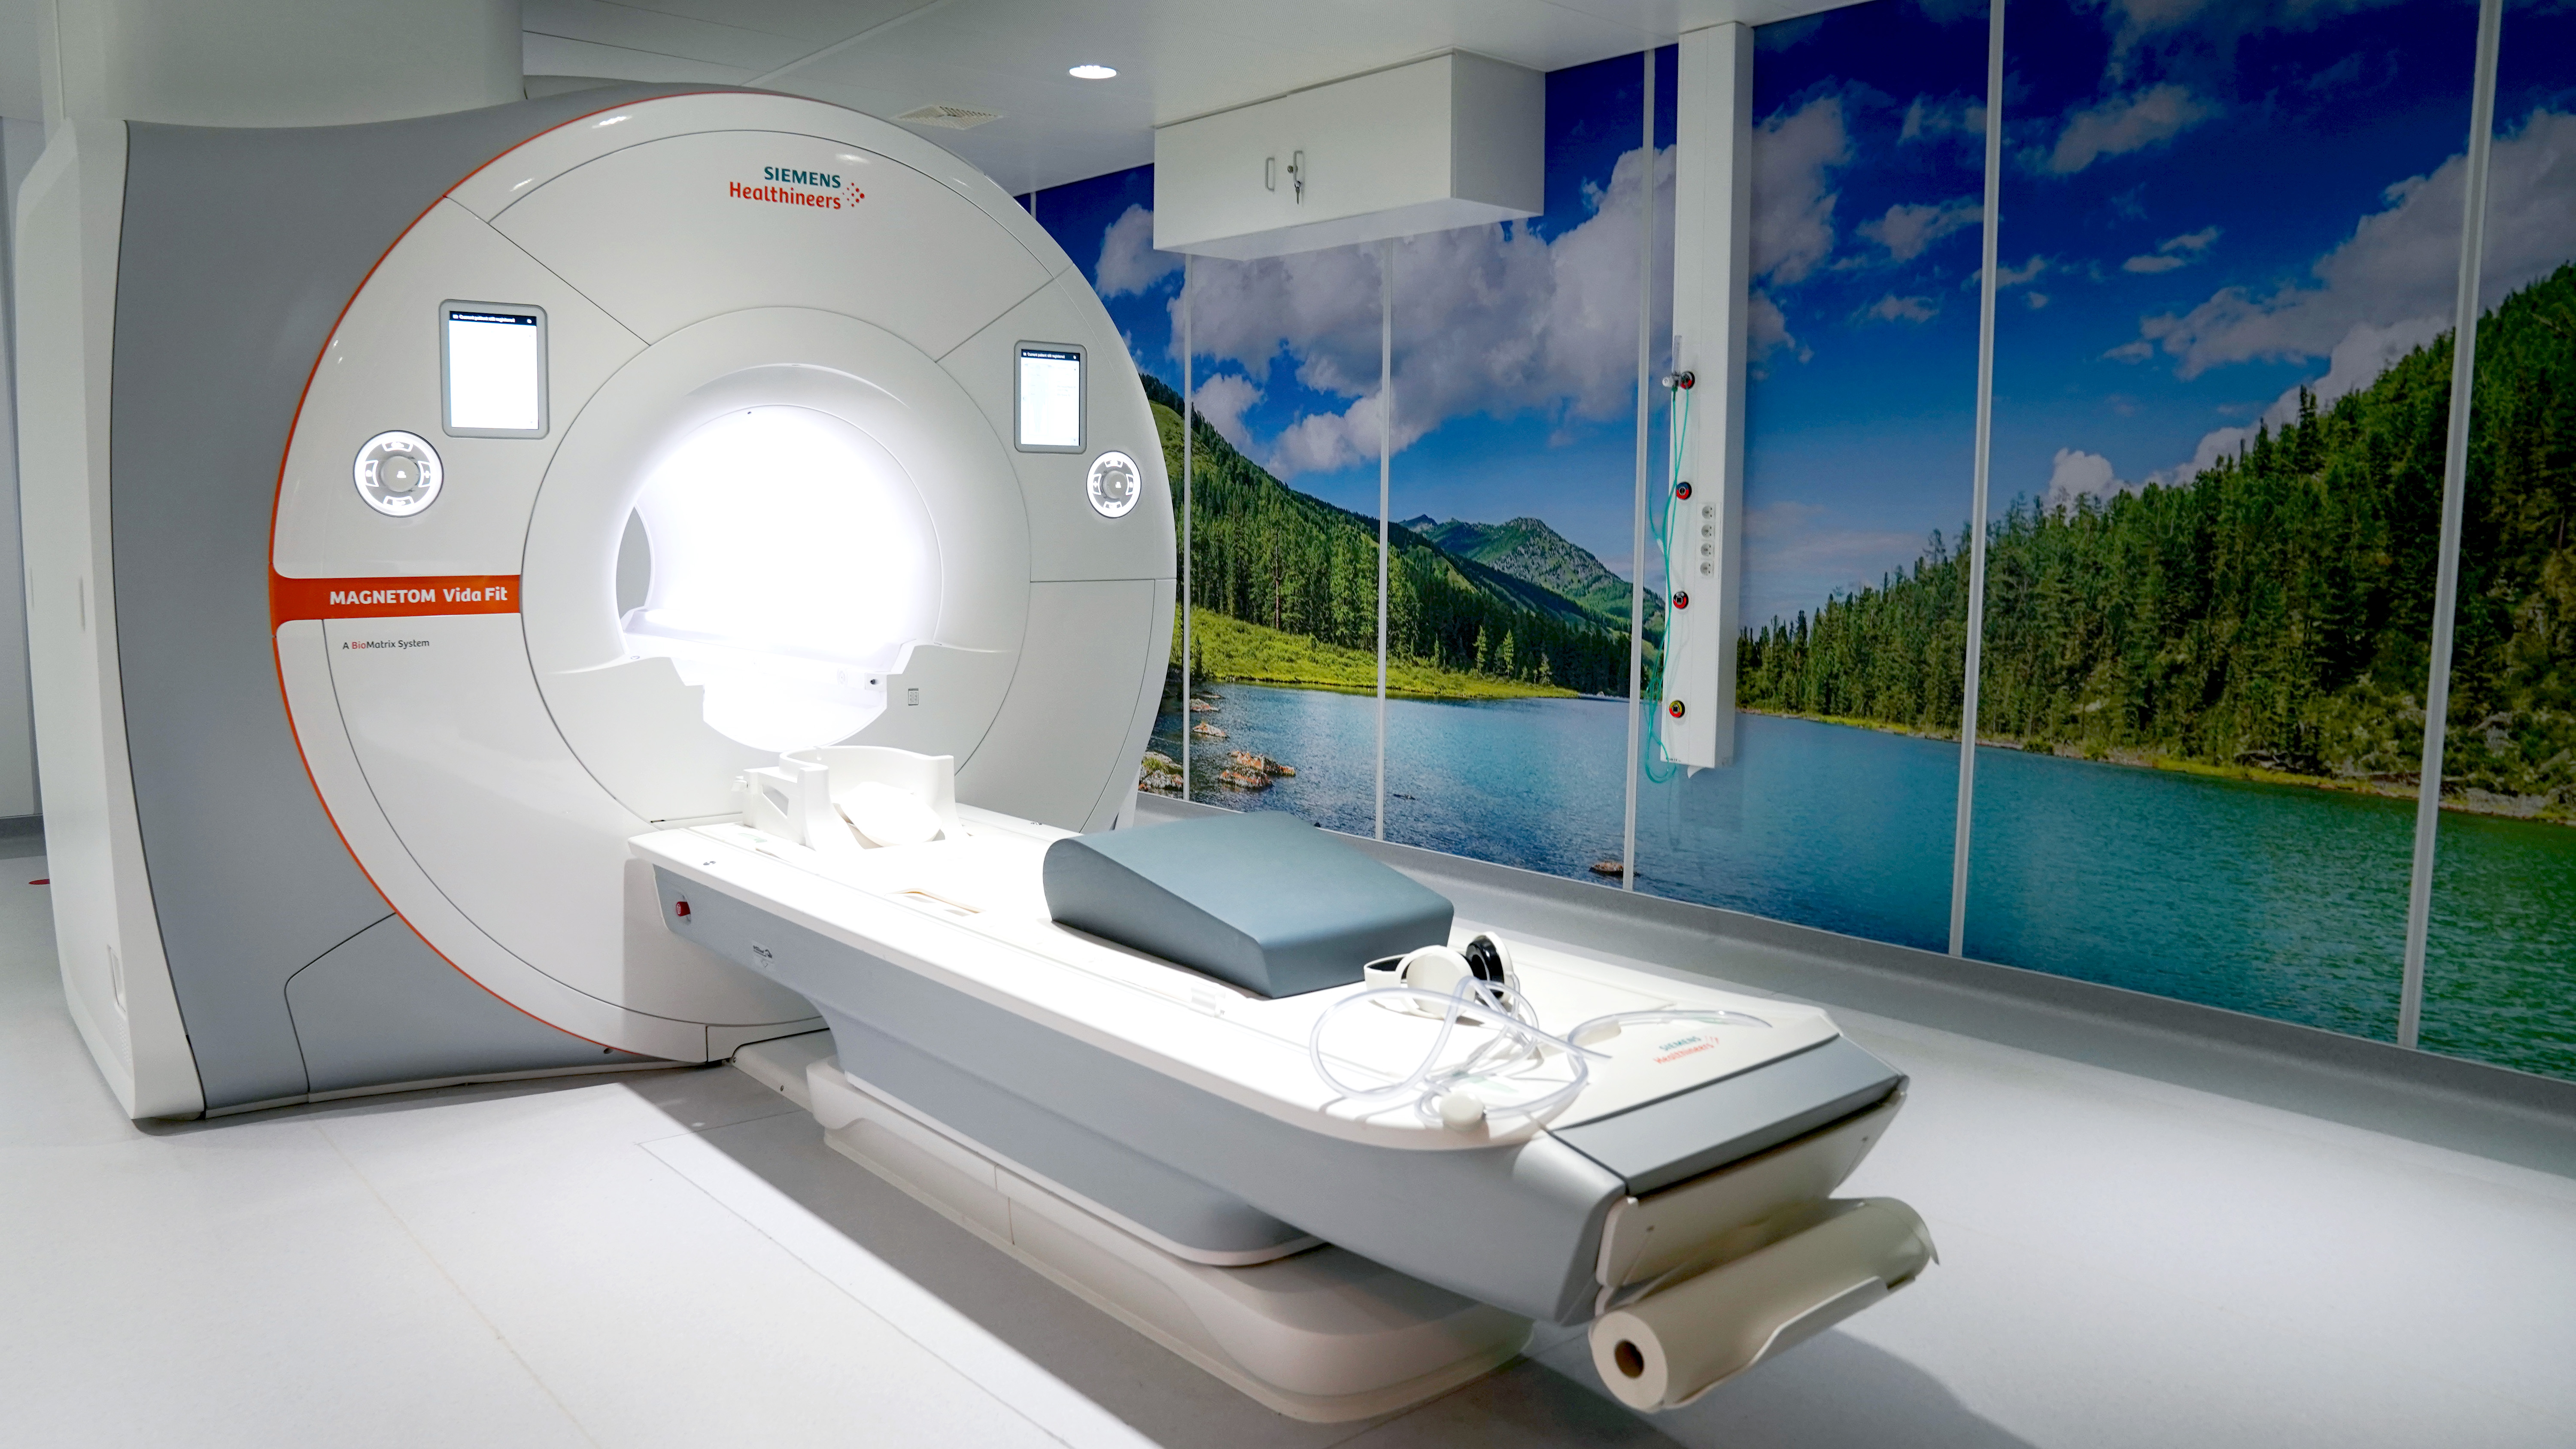 La nouvelle IRM de l'Hôpital Civil Marie Curie